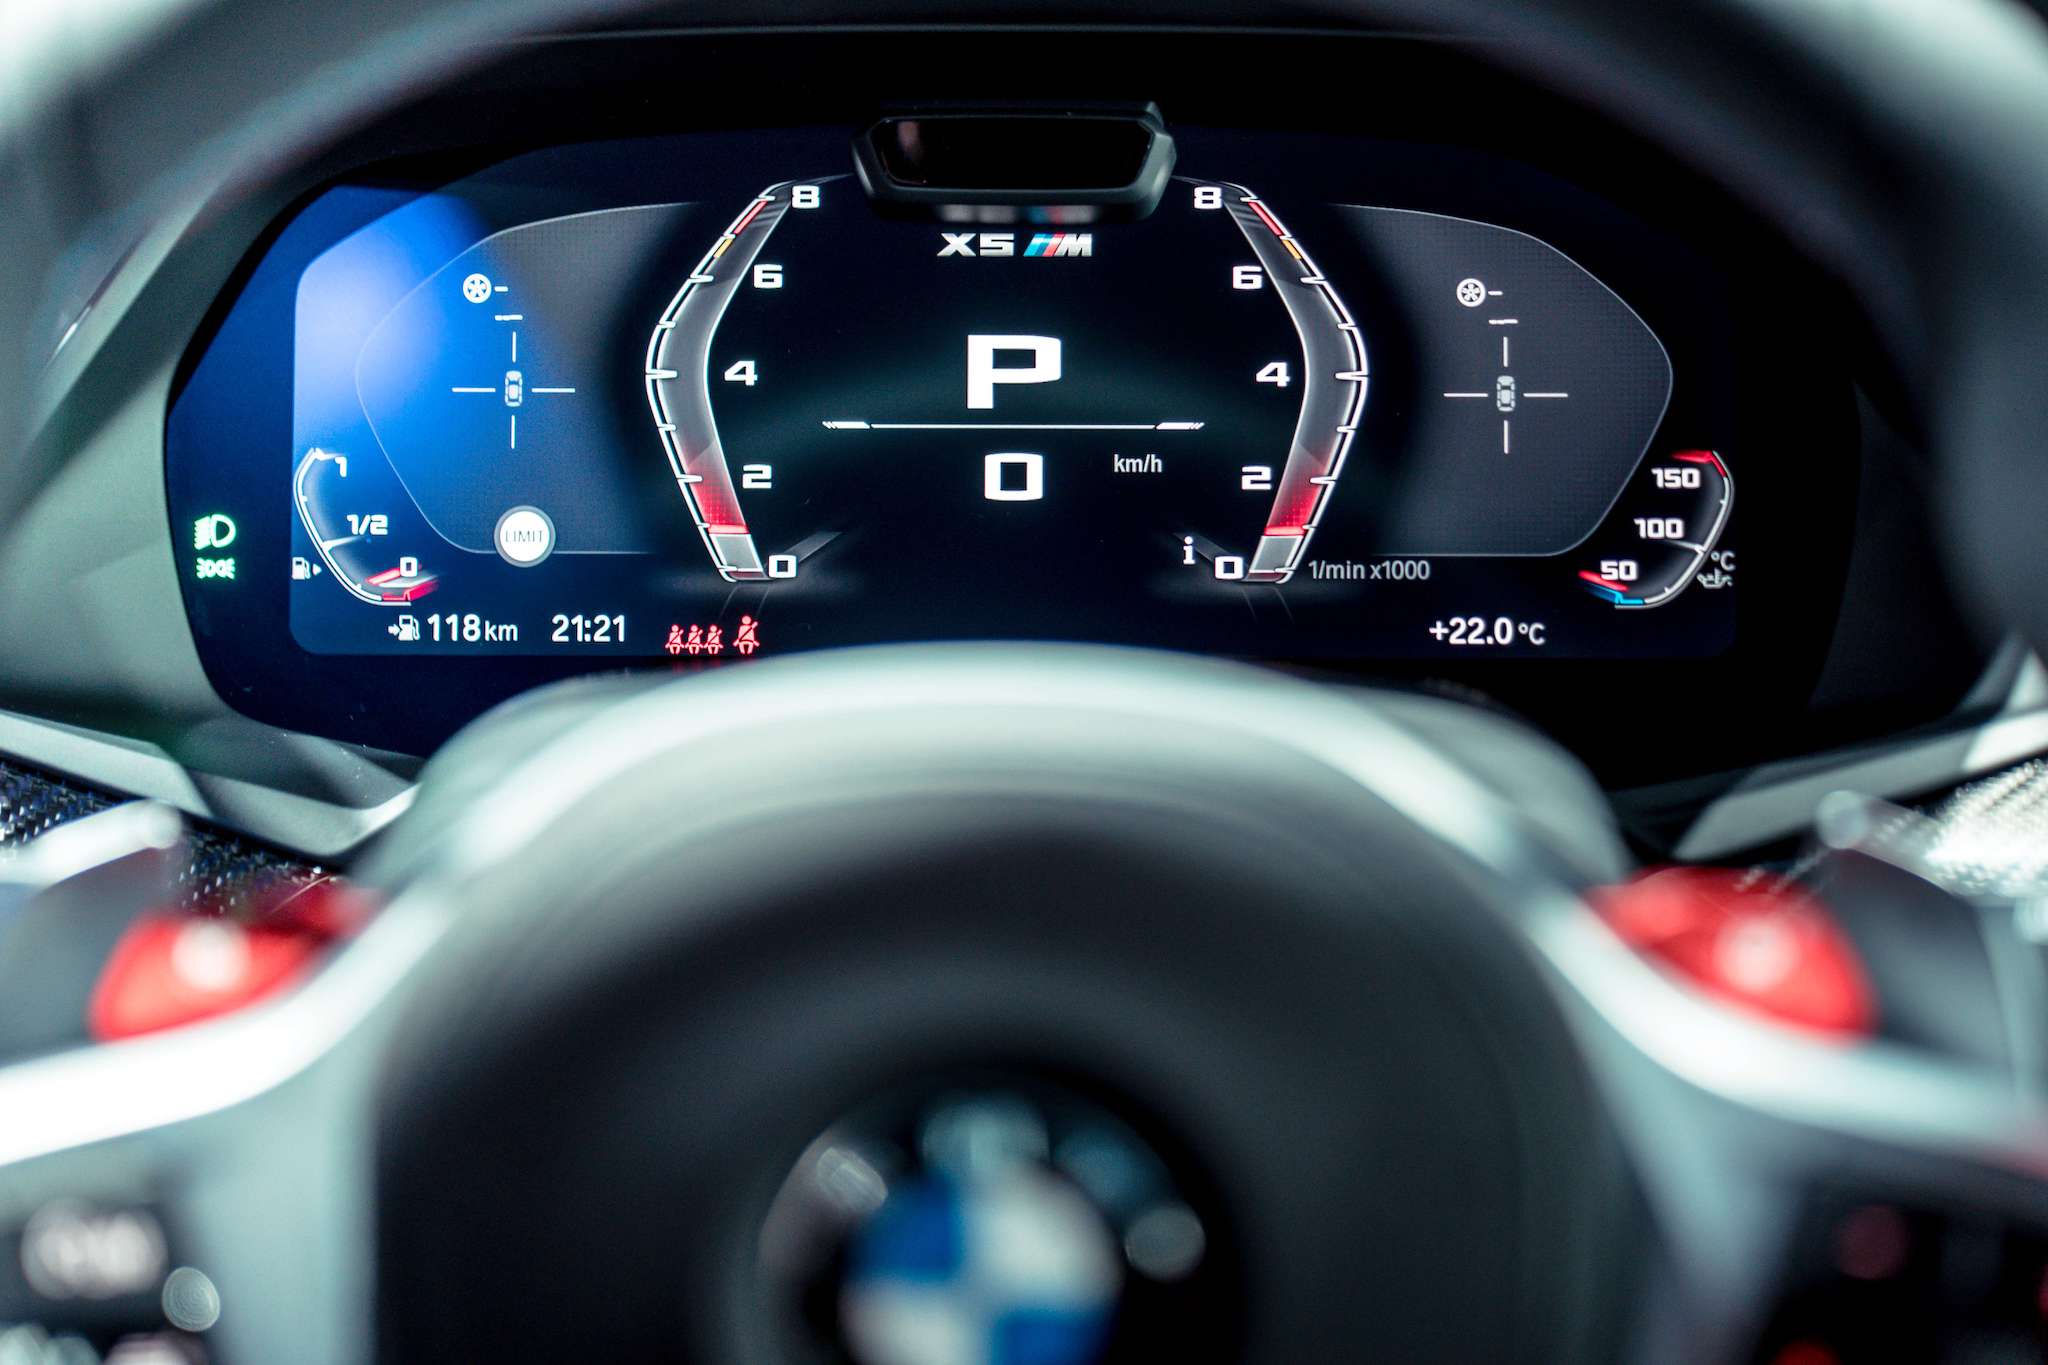 12.3 吋的虛擬數位儀錶在 Sport 模式中除去不必要的資訊，保留最精準數據，簡潔俐落的顯示畫面讓駕駛更全心專注。